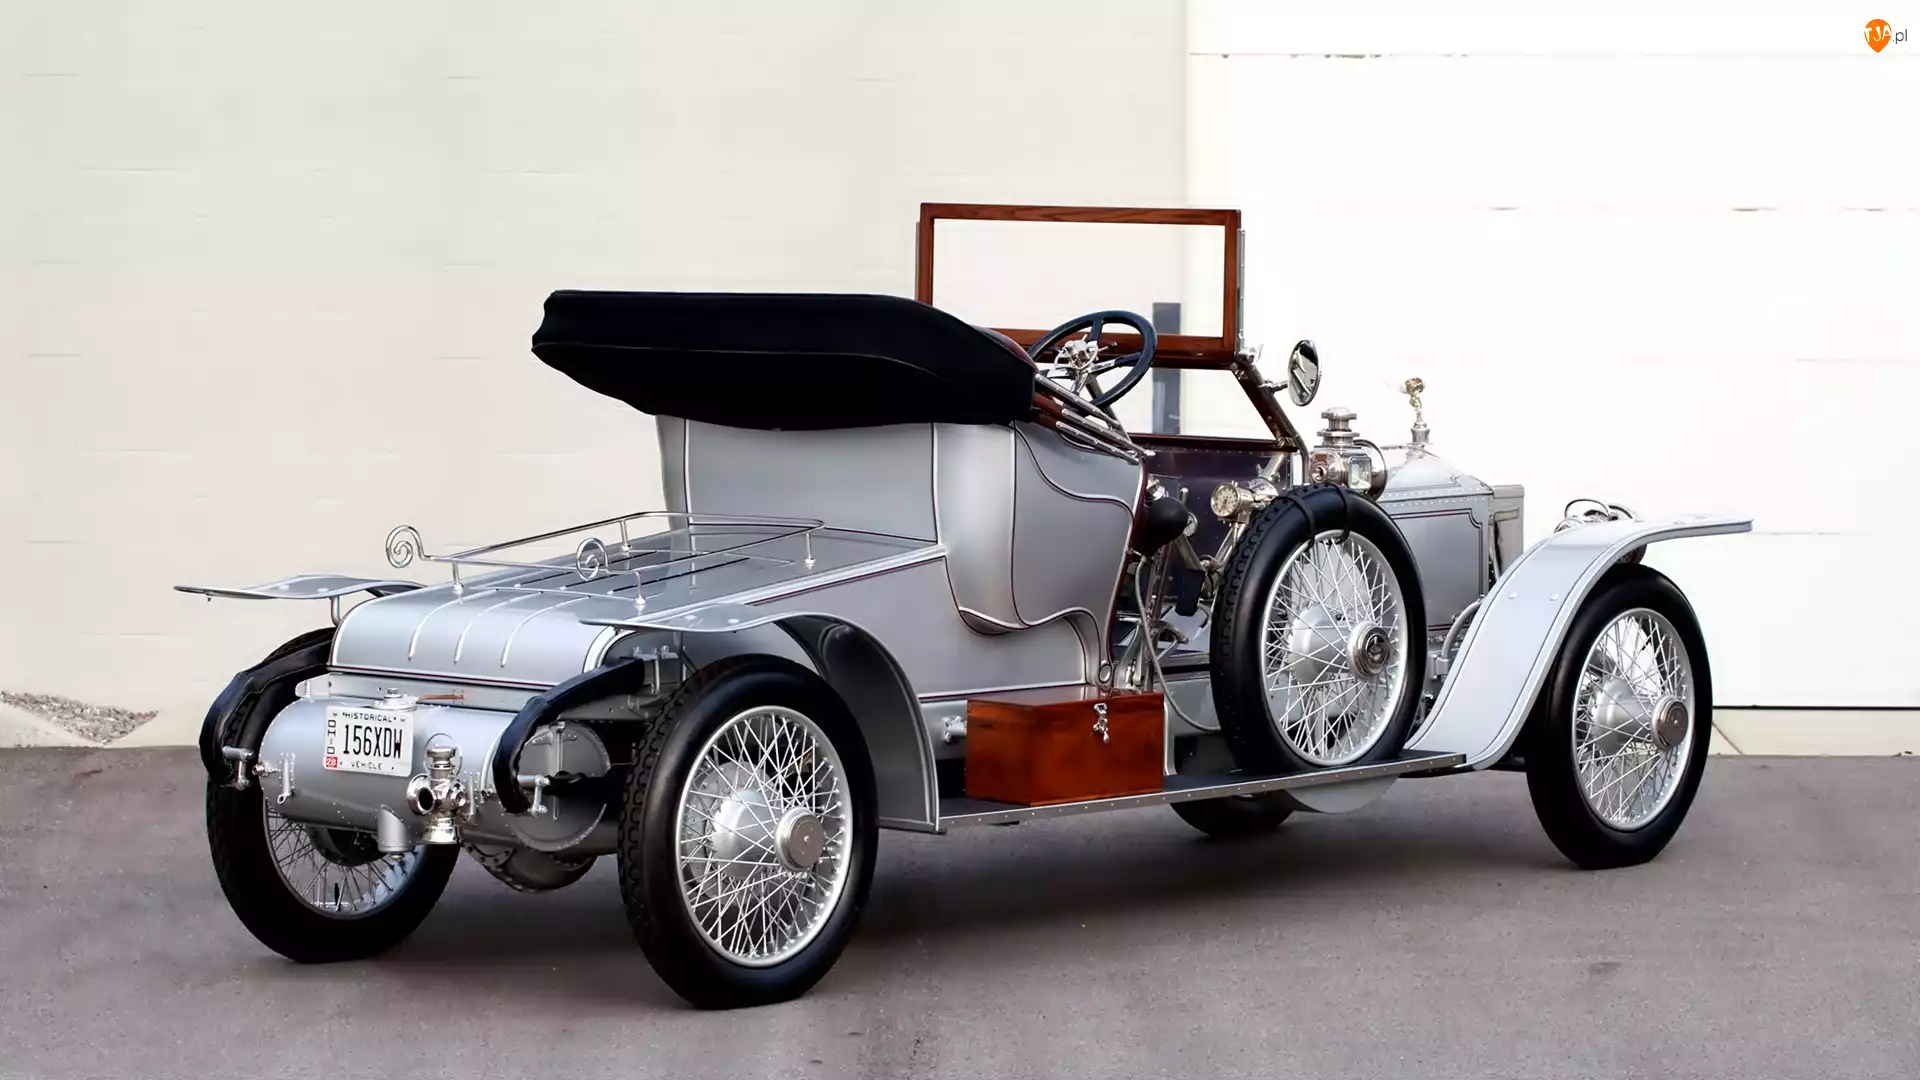 1911, Samochód zabytkowy, Rolls Royce